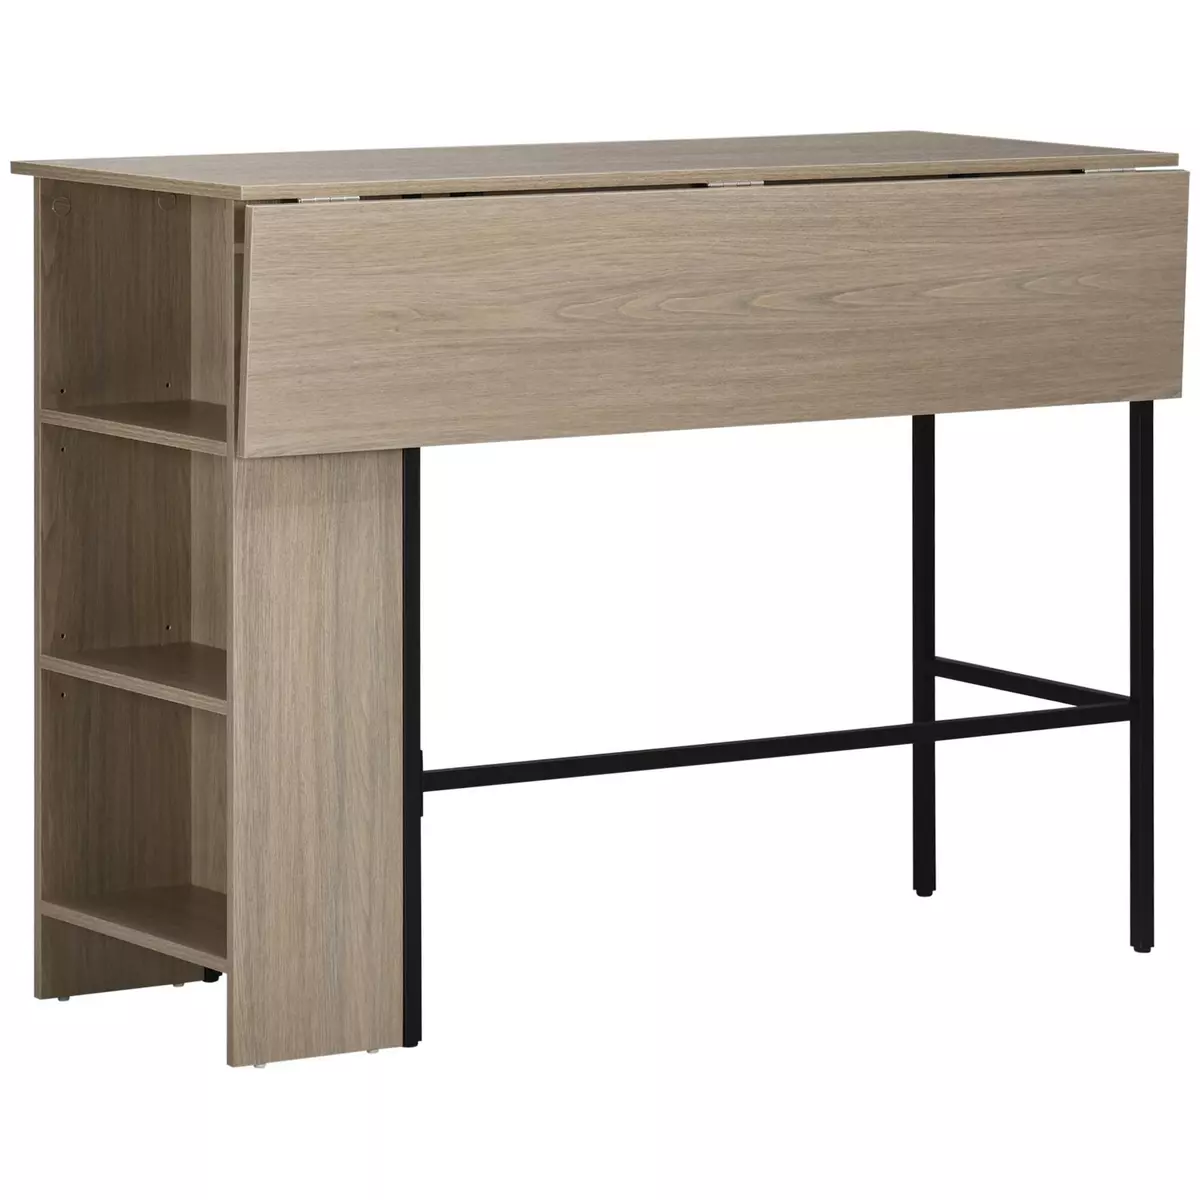 HOMCOM Table de bar extensible design industriel - 3 étagères intégrées - châssis métal noir panneaux particules aspect bois gris